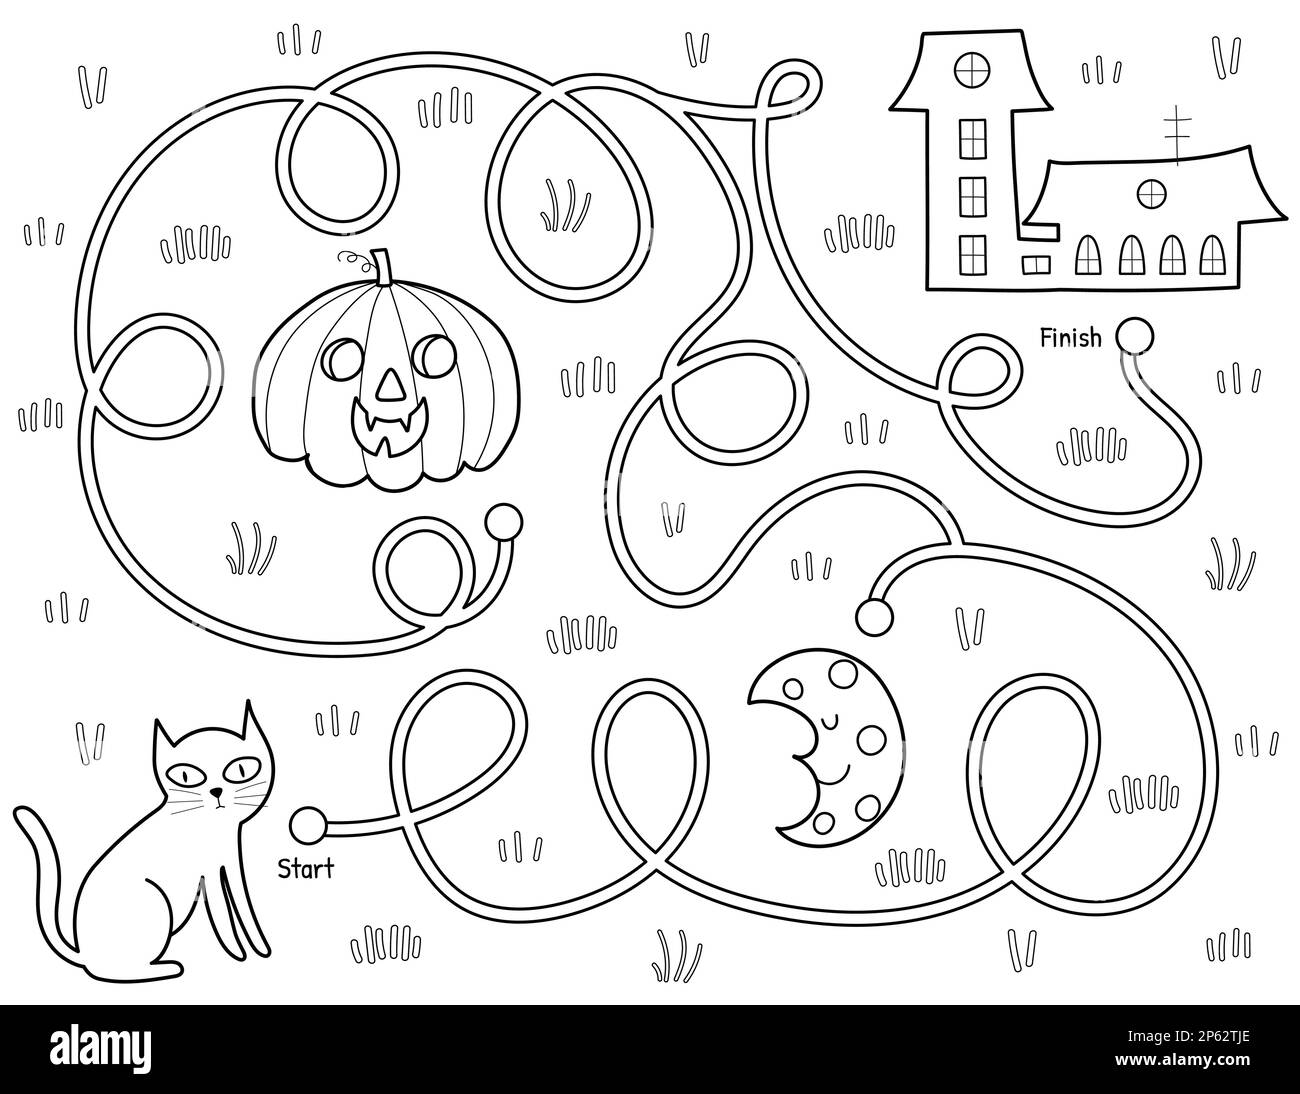 Hilf einer schwarzen Katze, den Weg zum Haus zu finden. Schwarz-Weiß-Halloween-Labyrinth-Spiel Stock Vektor